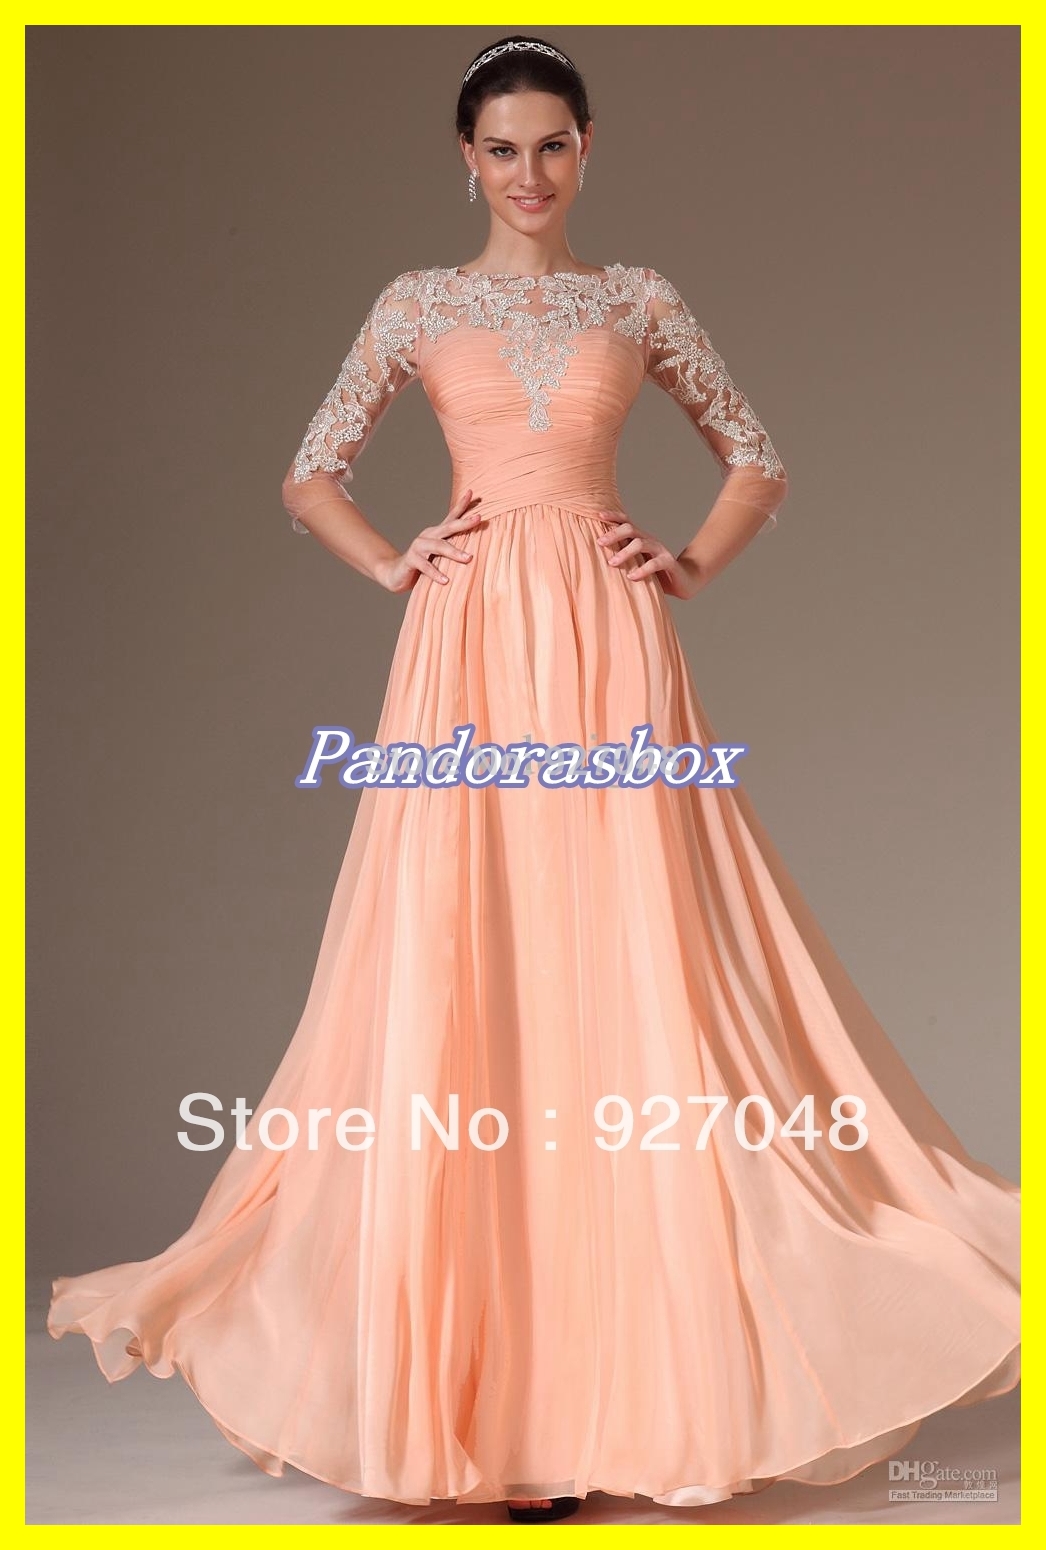 St Louis Prom Dress Stores - Ocodea.com